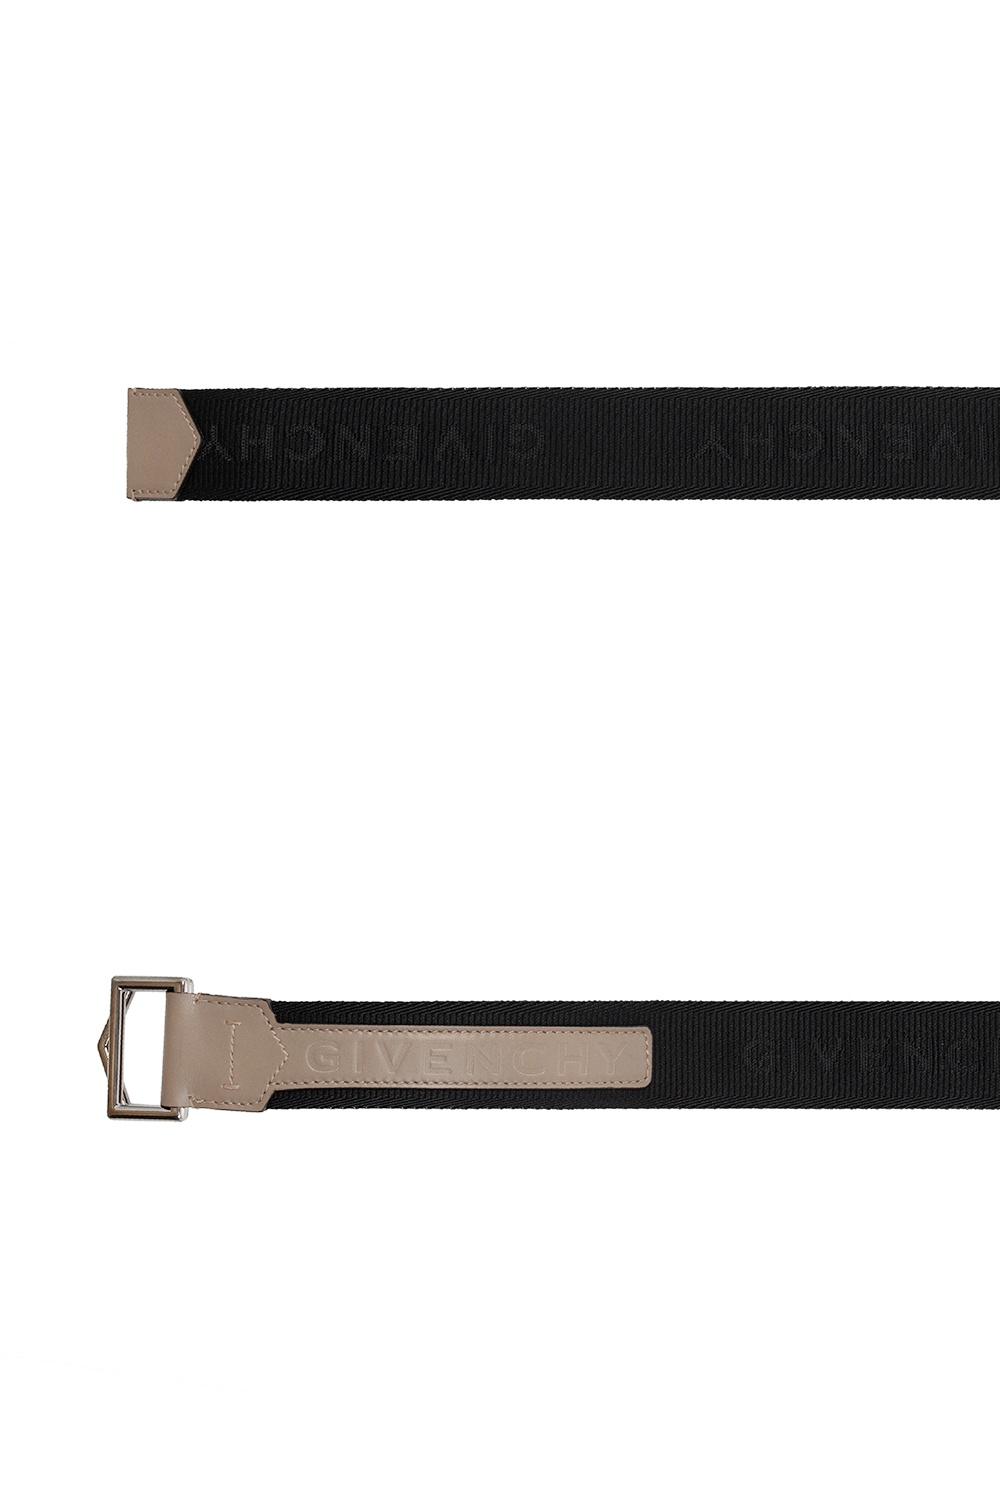 Givenchy Branded belt